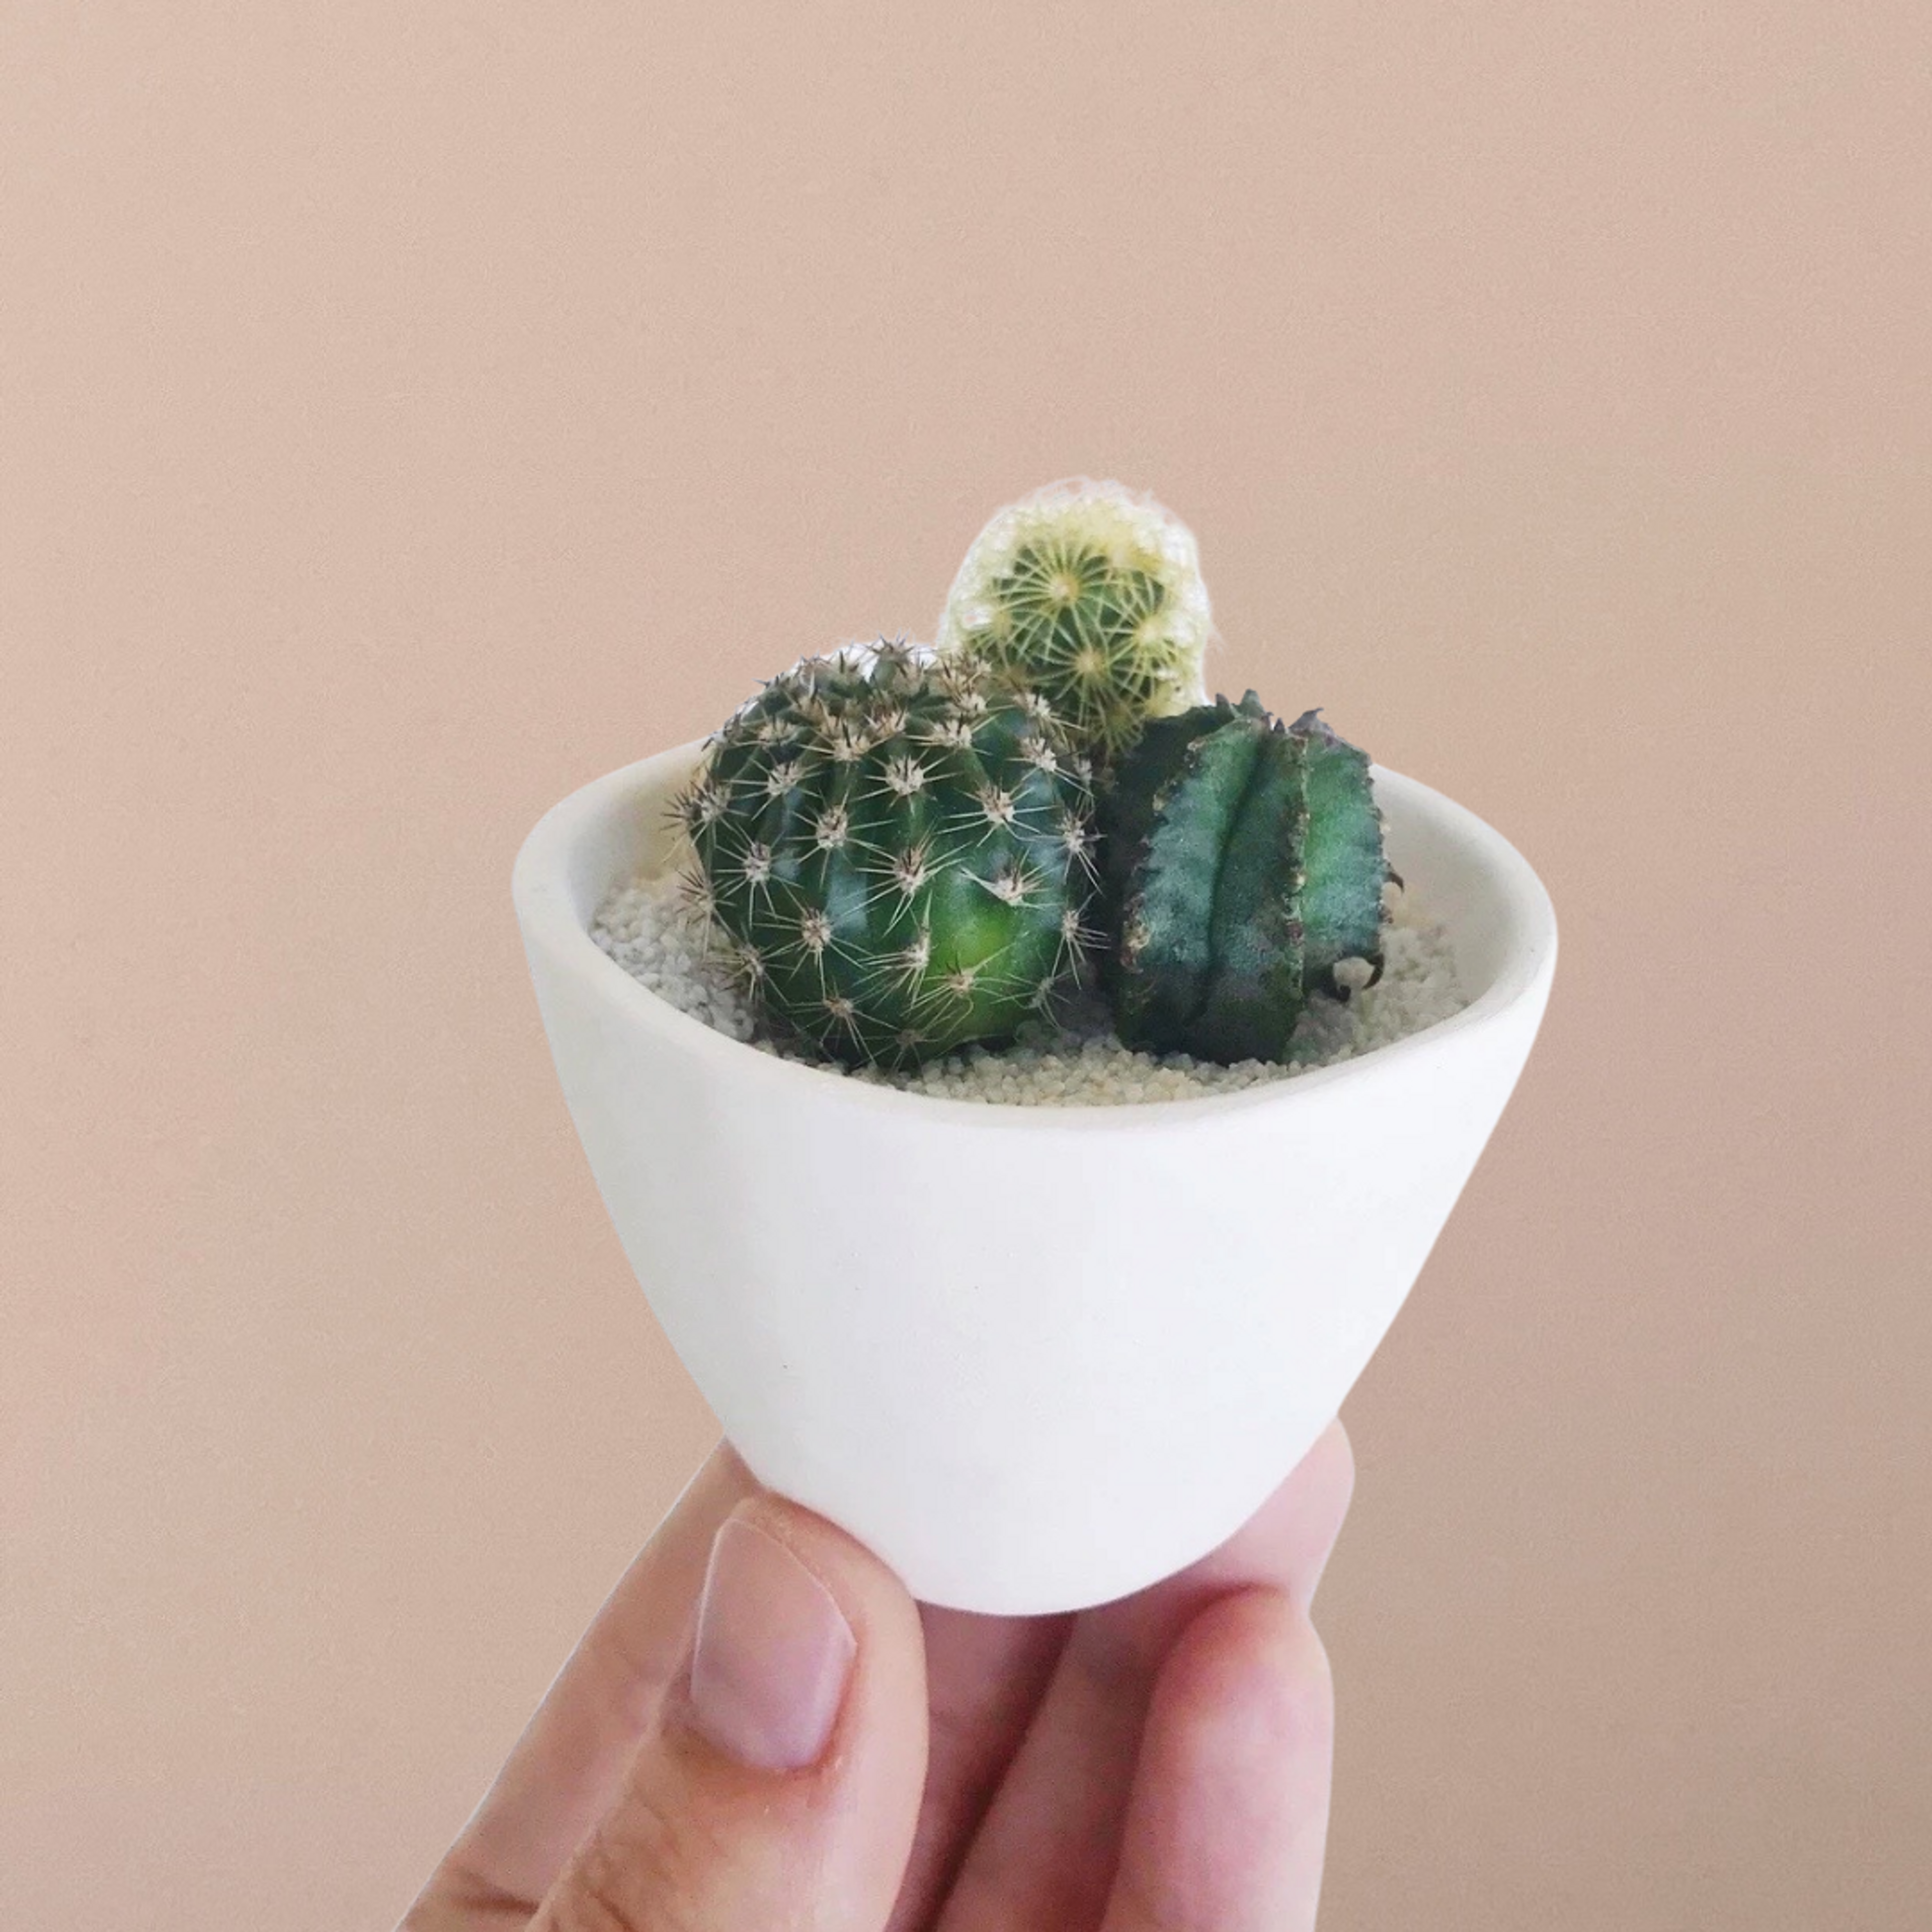 SURPRISE! Mini Cactus Garden Kit + Handmade Ceramic Planter